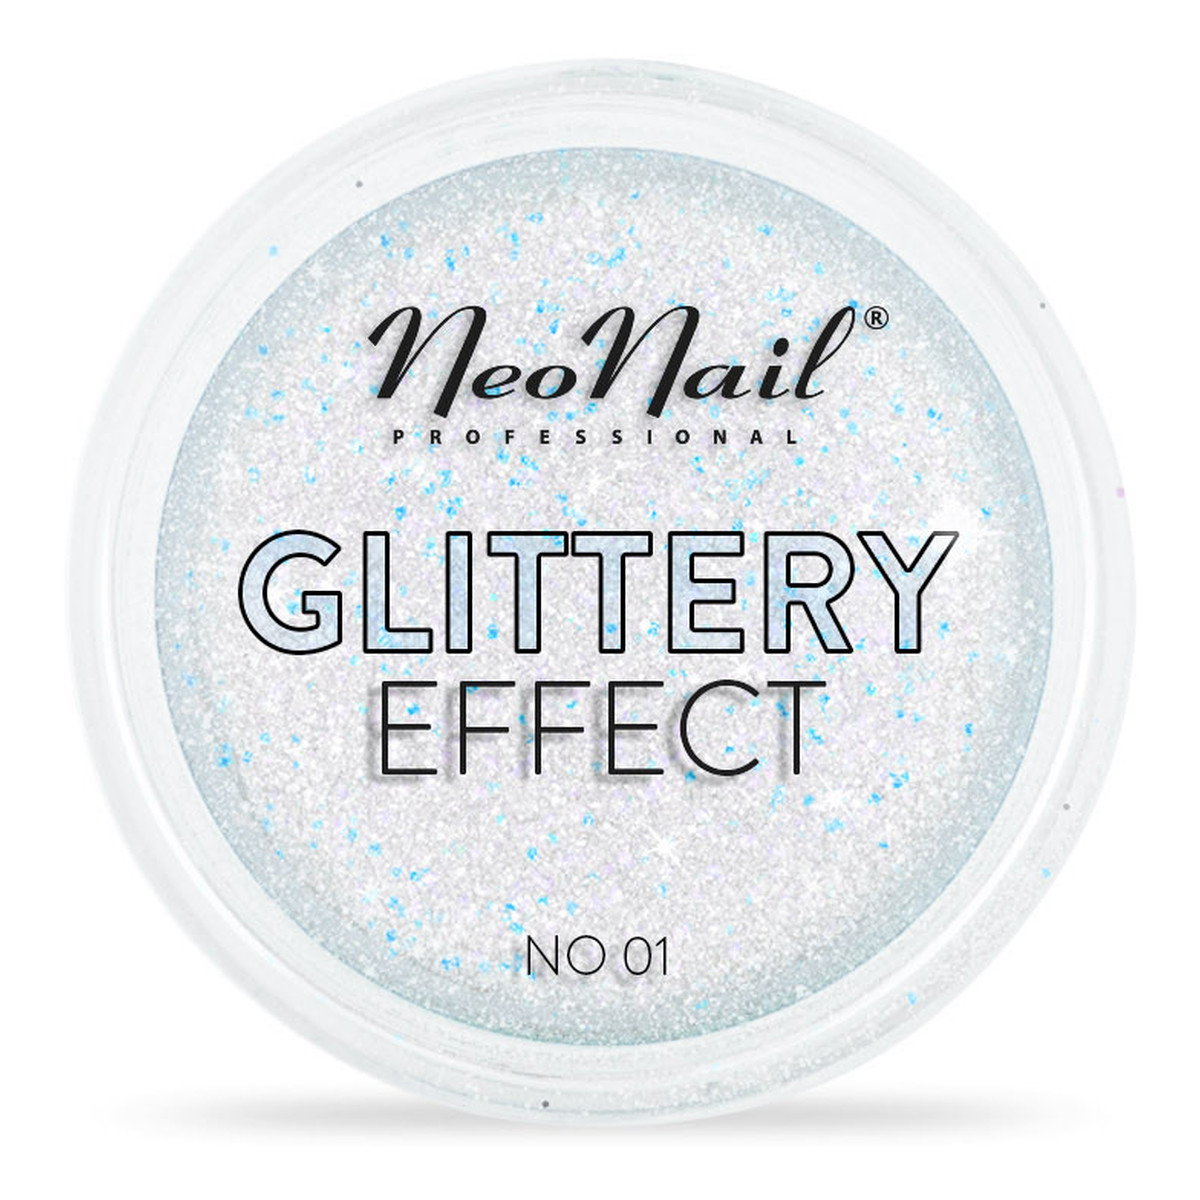 NeoNail Glittery Effect Pyłek Do Stylizacji Paznokci 2g